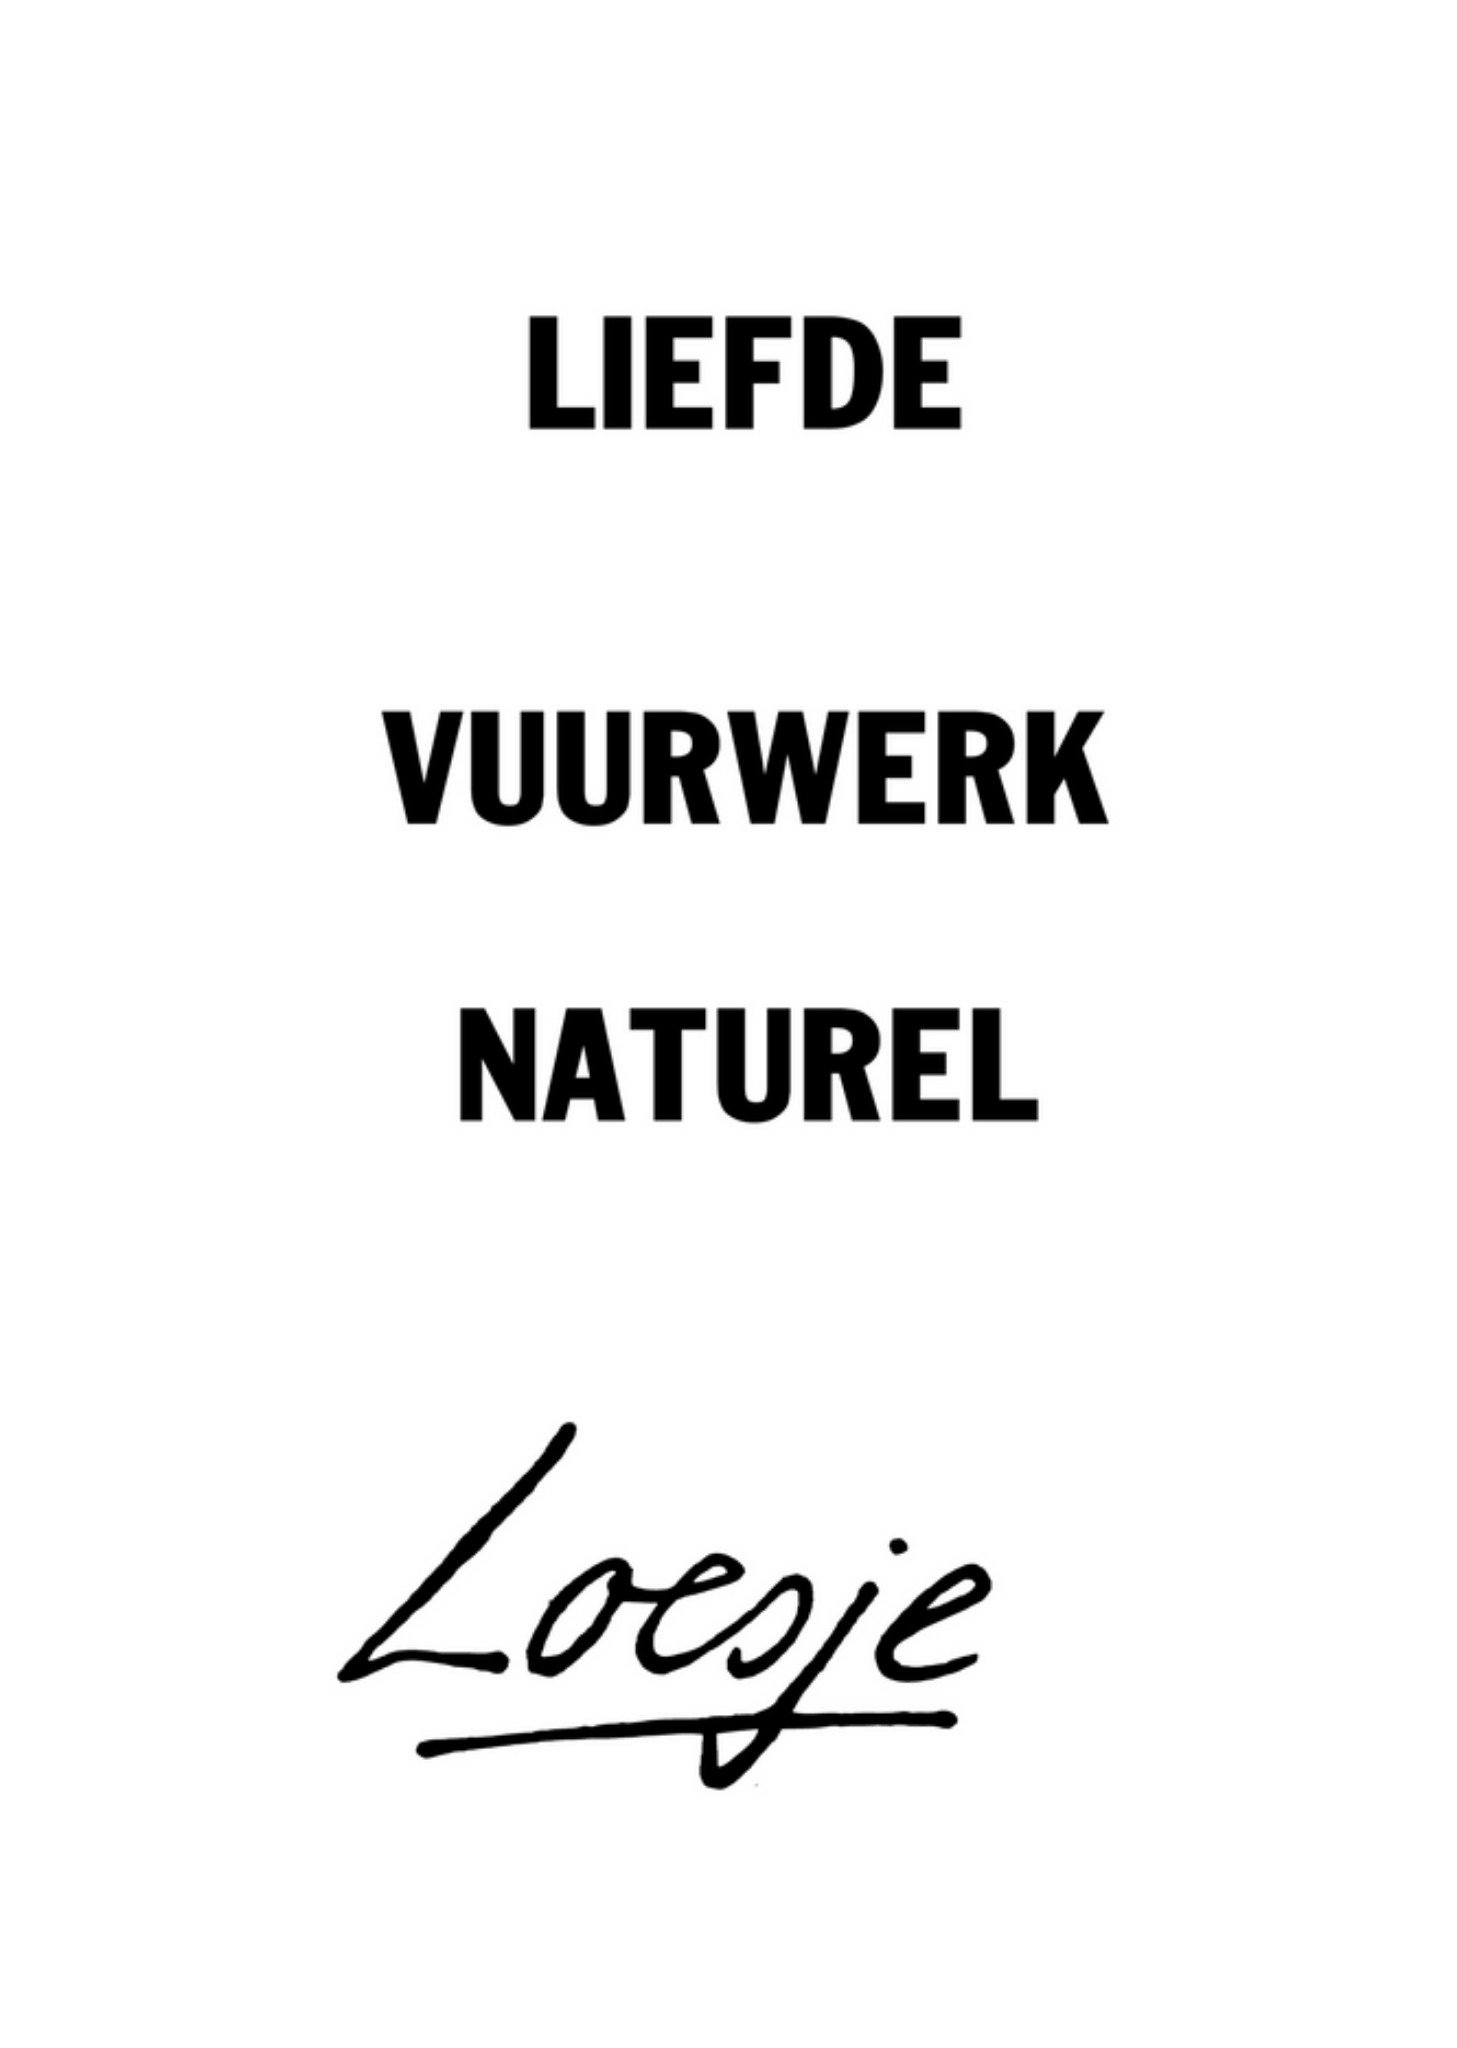 Loesje - Quote - Liefde - Naturel